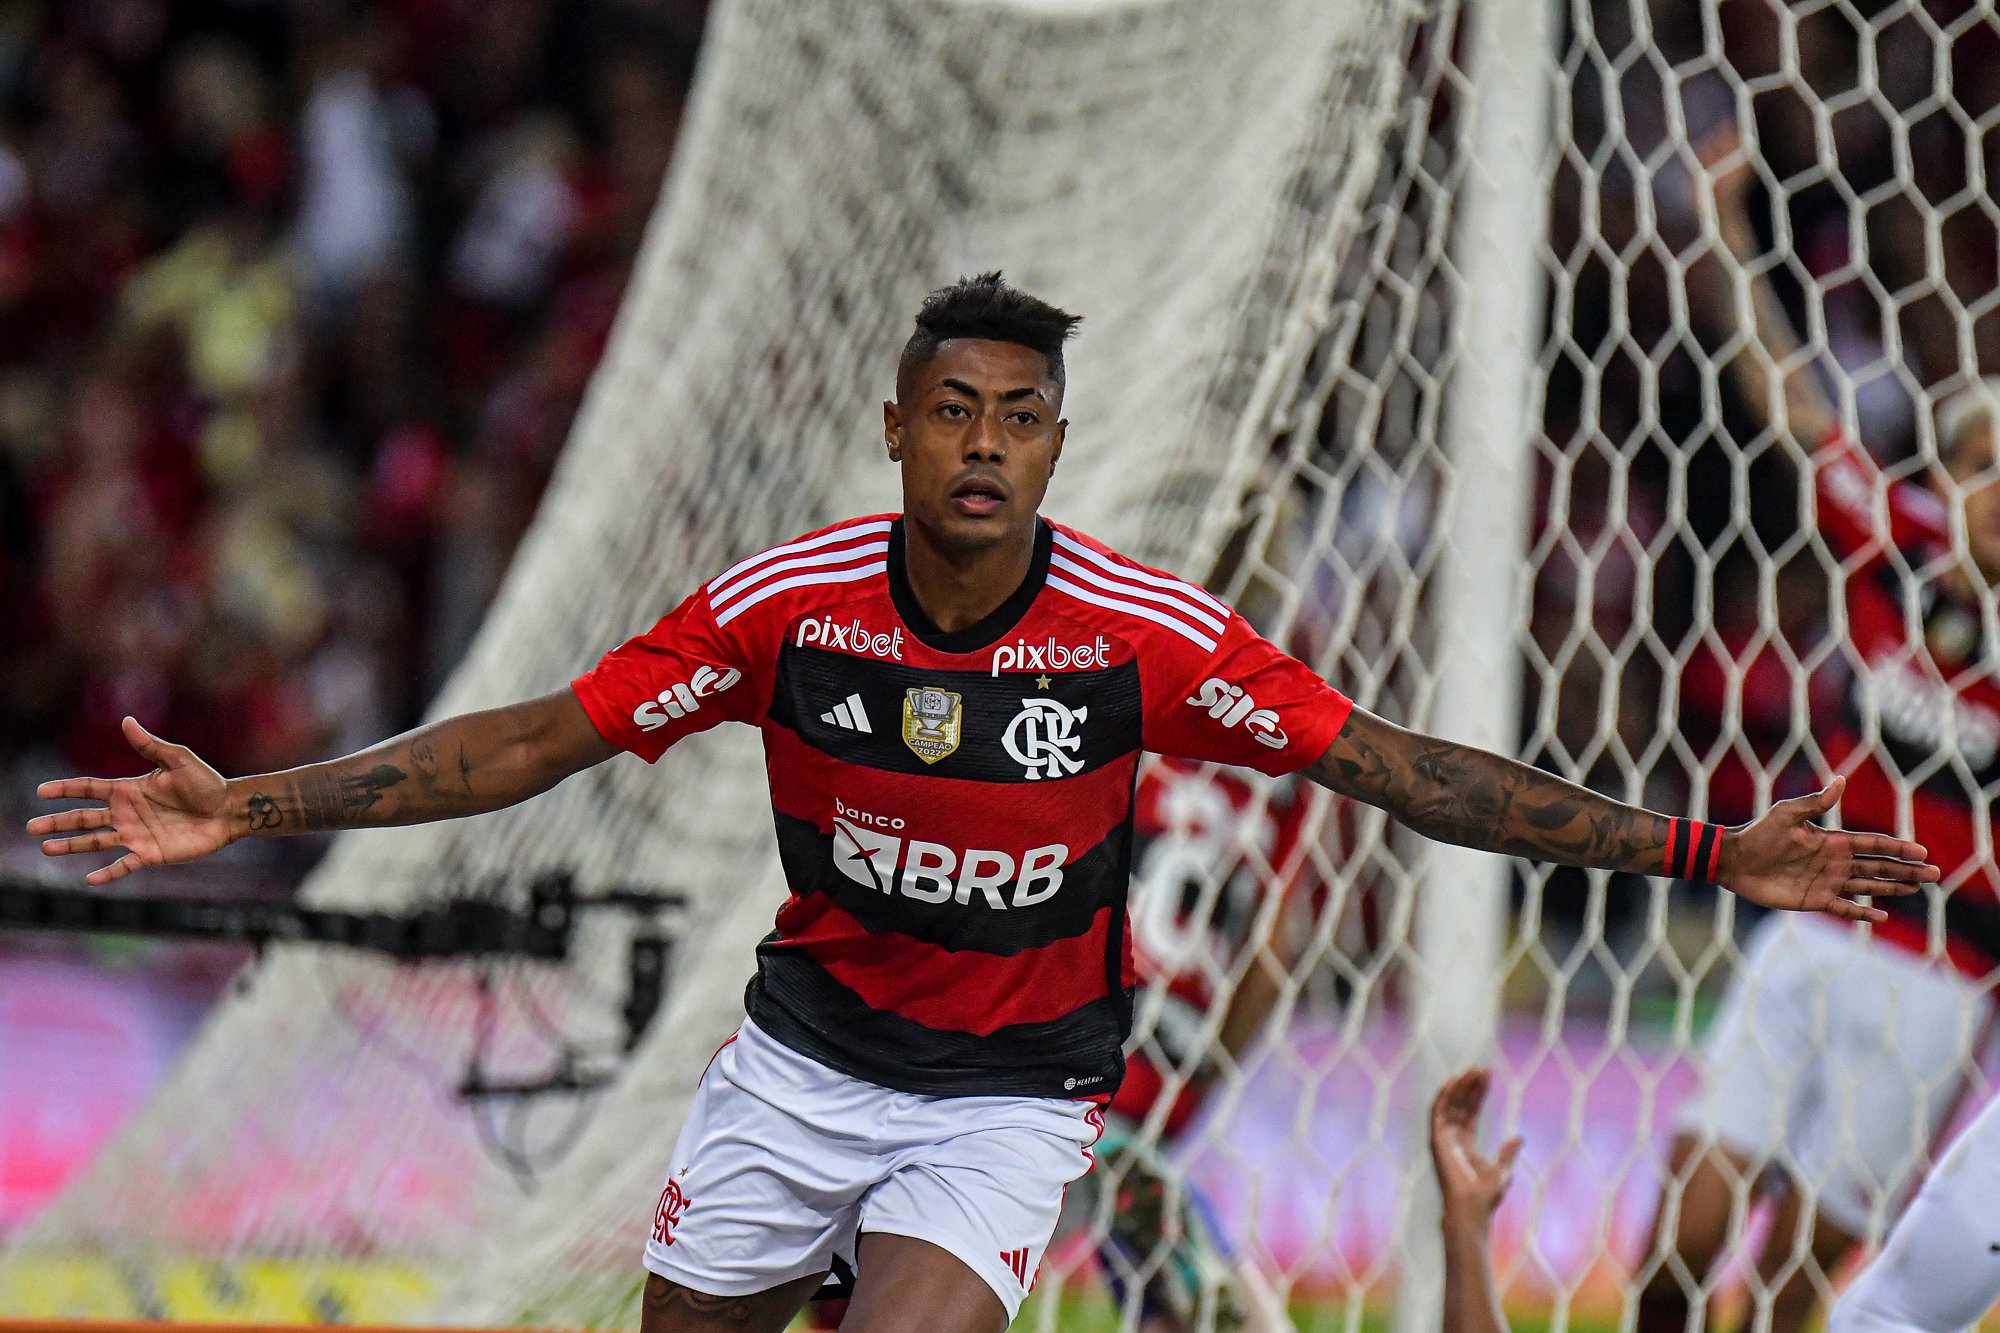 O jogador, ídolo do Flamengo, vive impasse com o clube carioca e ainda não acertou a renovação de contrato. Os paulistas aproveitam o imbróglio para tentar seduzir o atleta